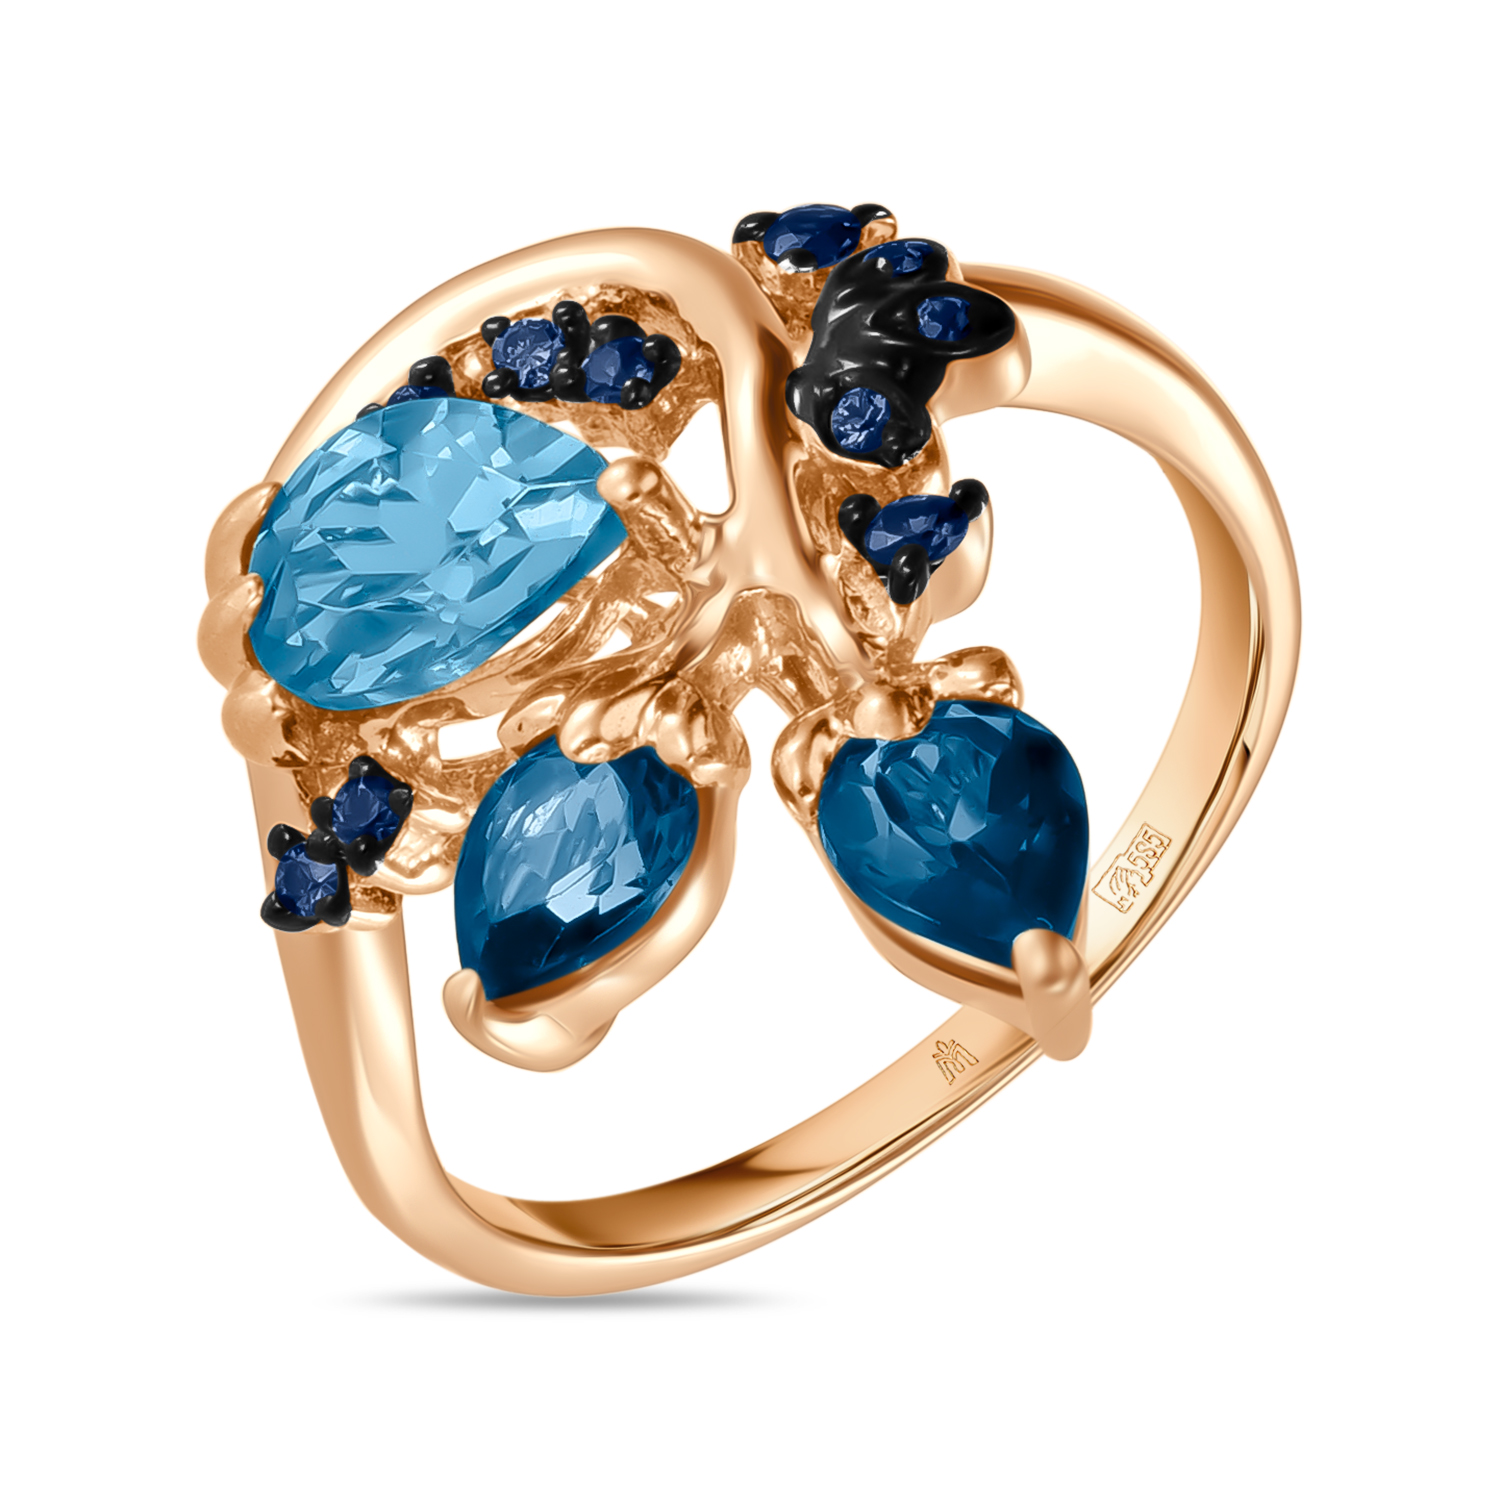 Кольца МЮЗ Золотое кольцо с топазом, цветными бриллиантами и сапфирами кольца мюз золотое кольцо с аметистом топазом бриллиантами и цветными бриллиантами